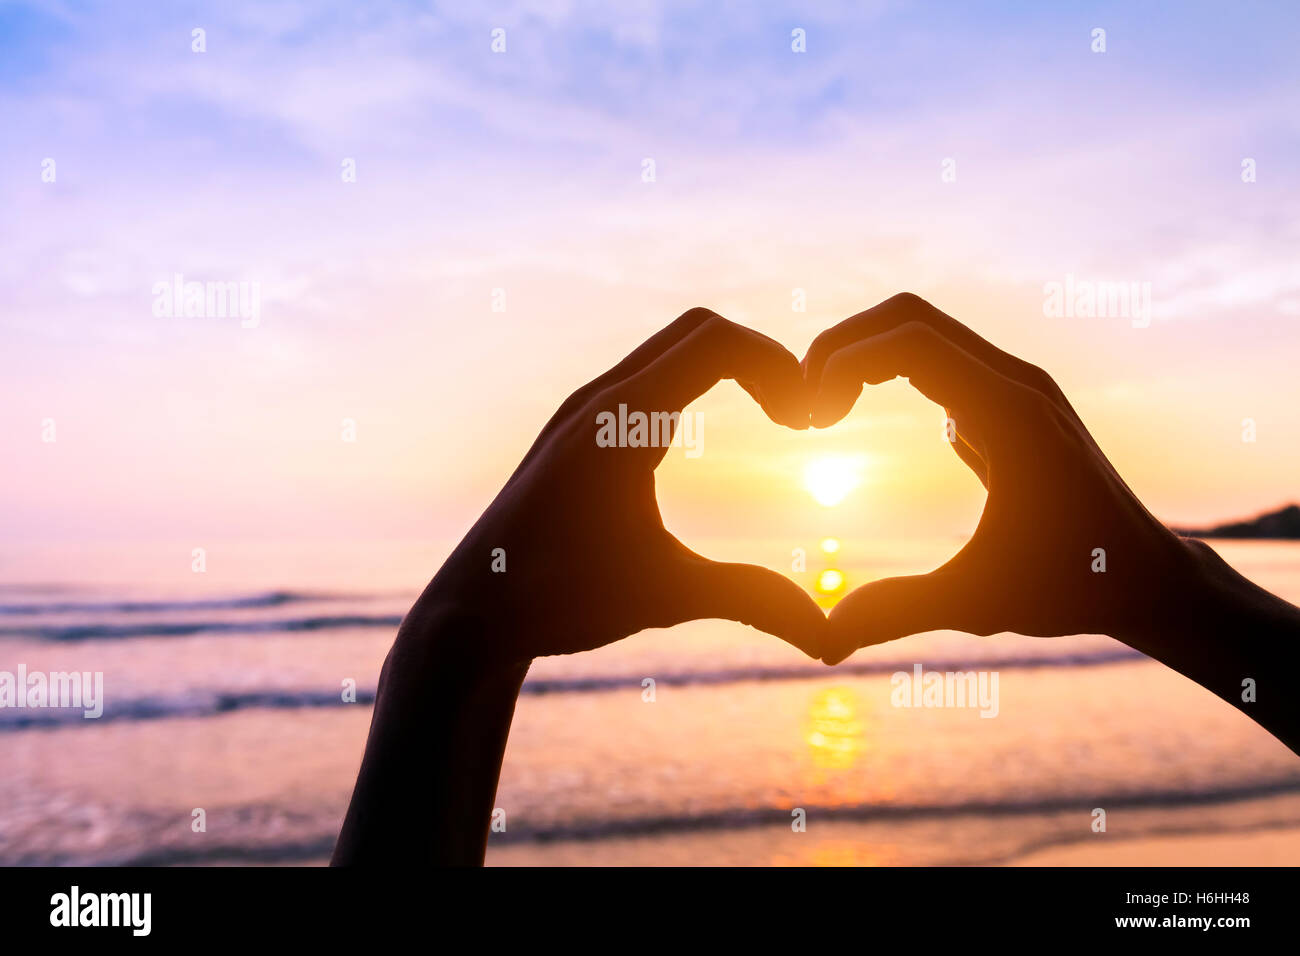 Forme de coeur fait avec silhouette de mains sur une plage avec coucher de soleil et de couleurs - symbole de l'amour - voyage romantique Banque D'Images